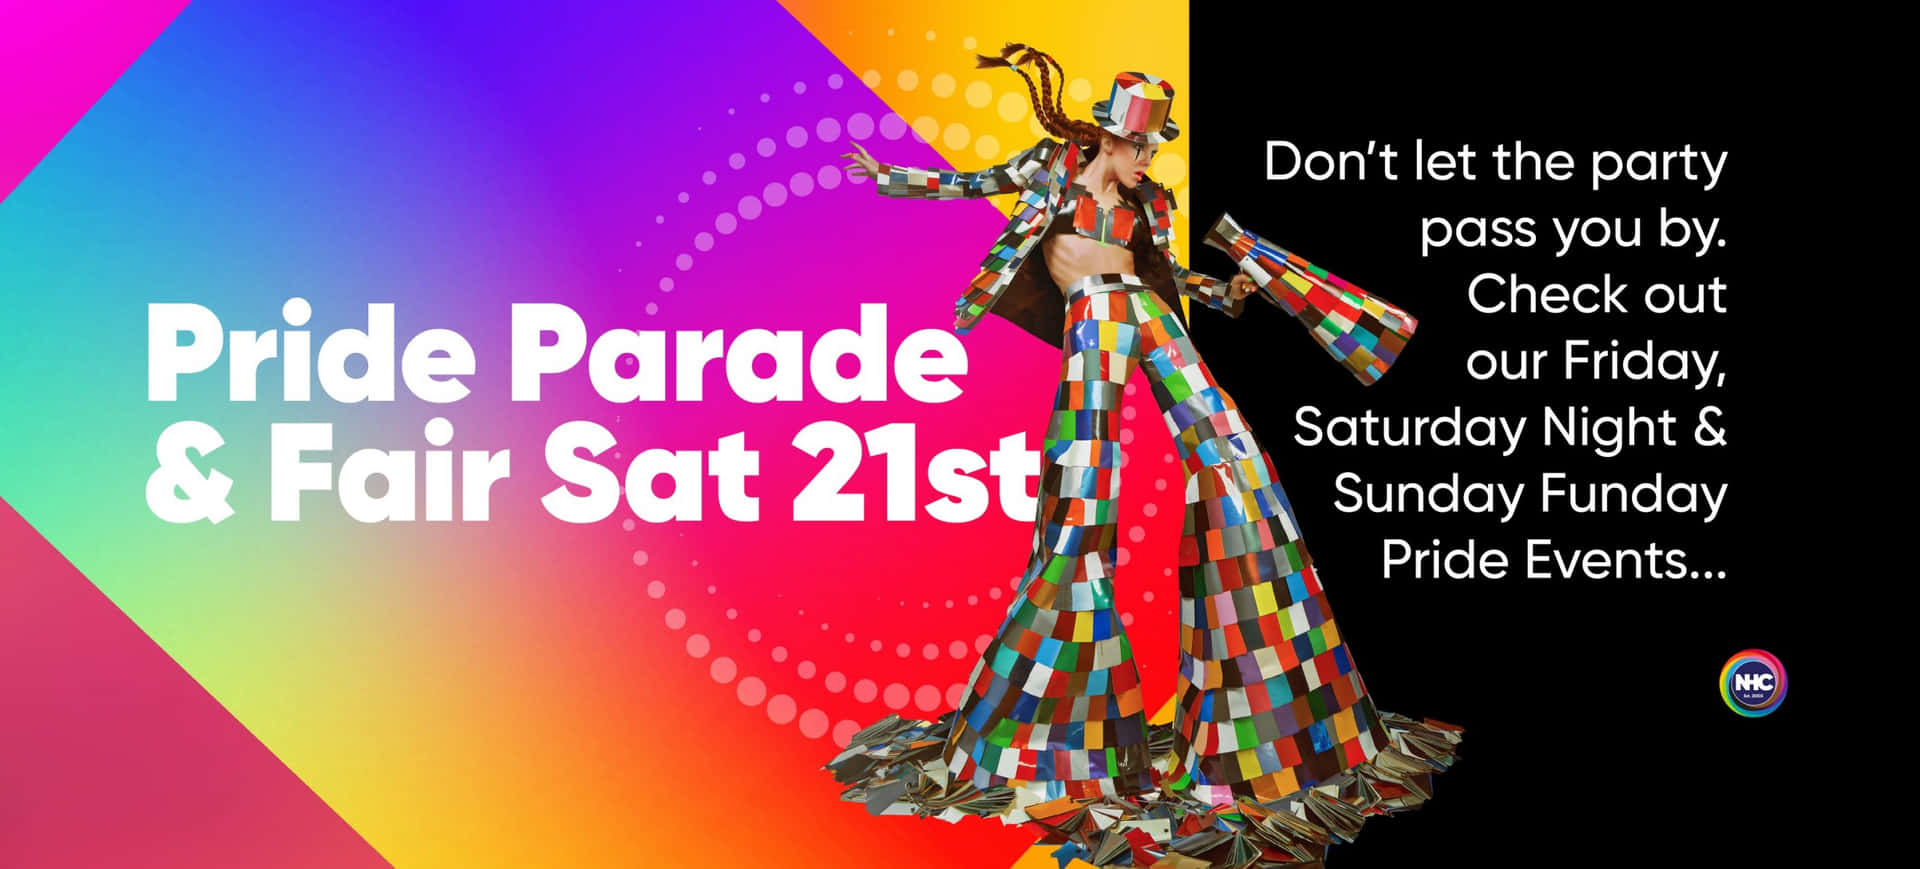 Prideparade Und Fair Am Samstag, Den 21. Posterbild